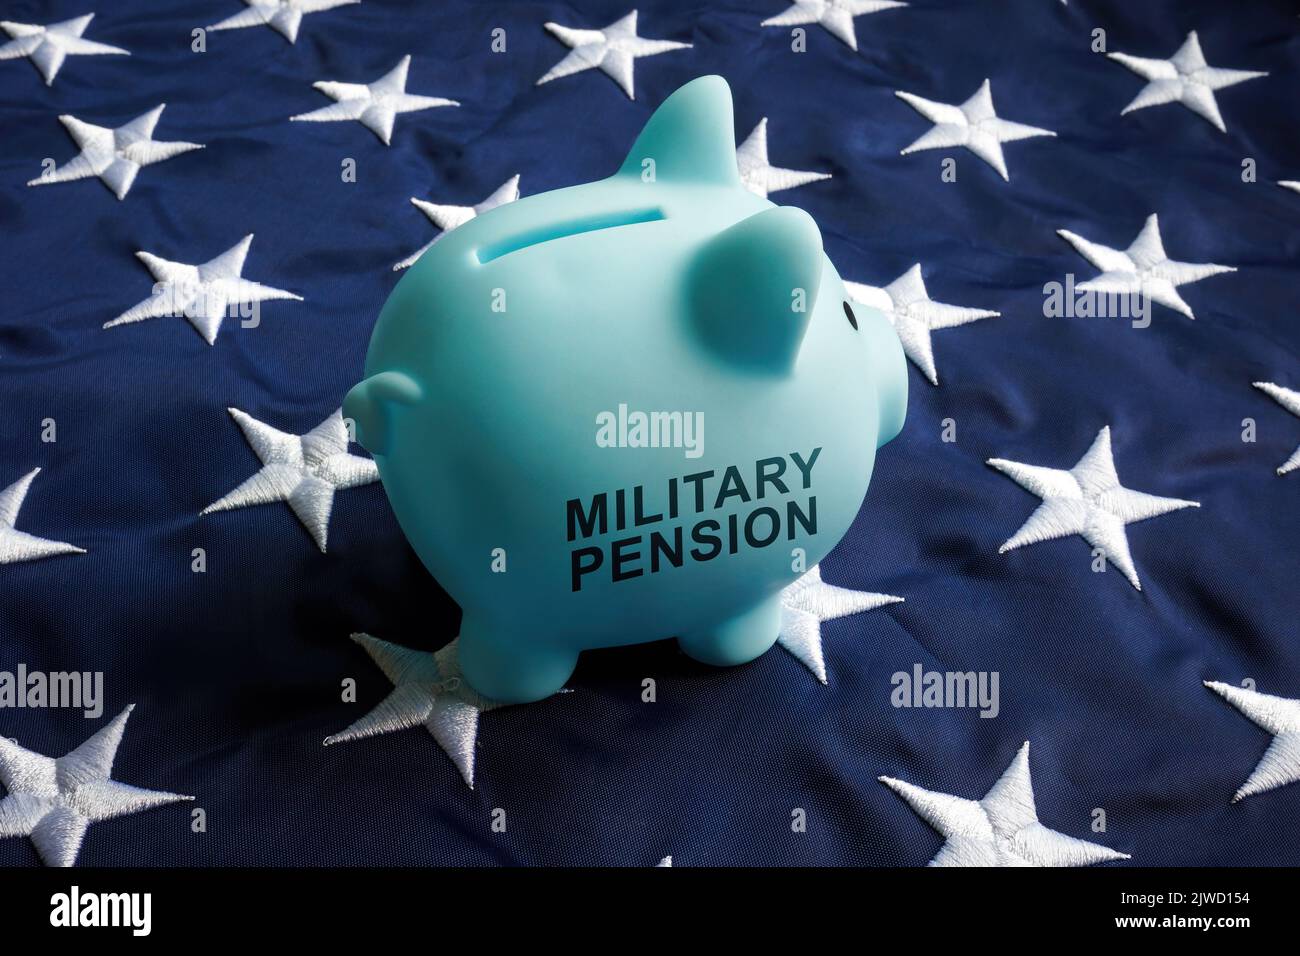 Concepto de pensión militar. Banco de cerdos con un cartel en una bandera. Foto de stock